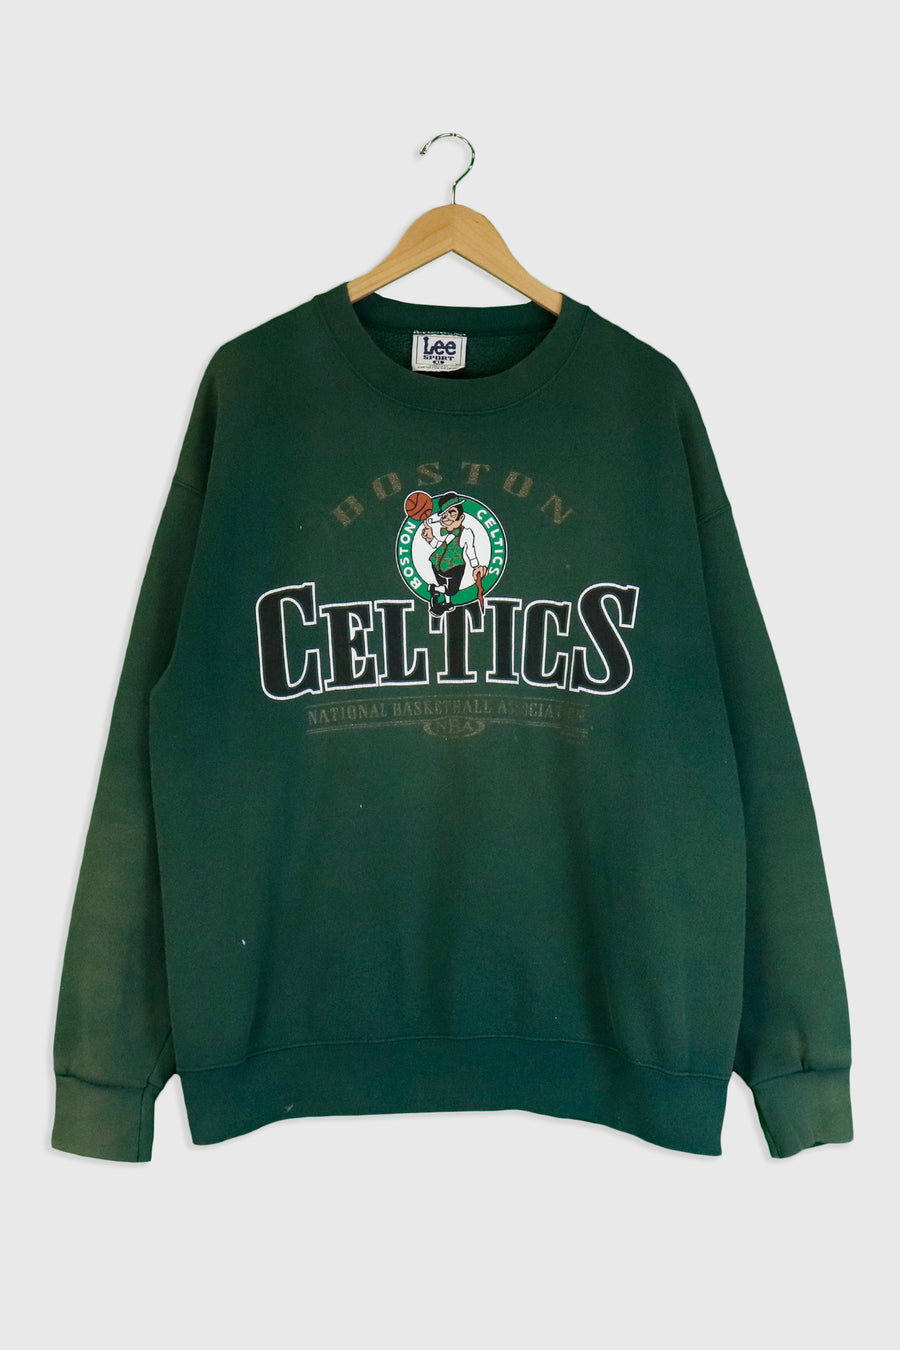 Vintage NBA Boston Celtics Gold Accent Sweatshirt Sz XL